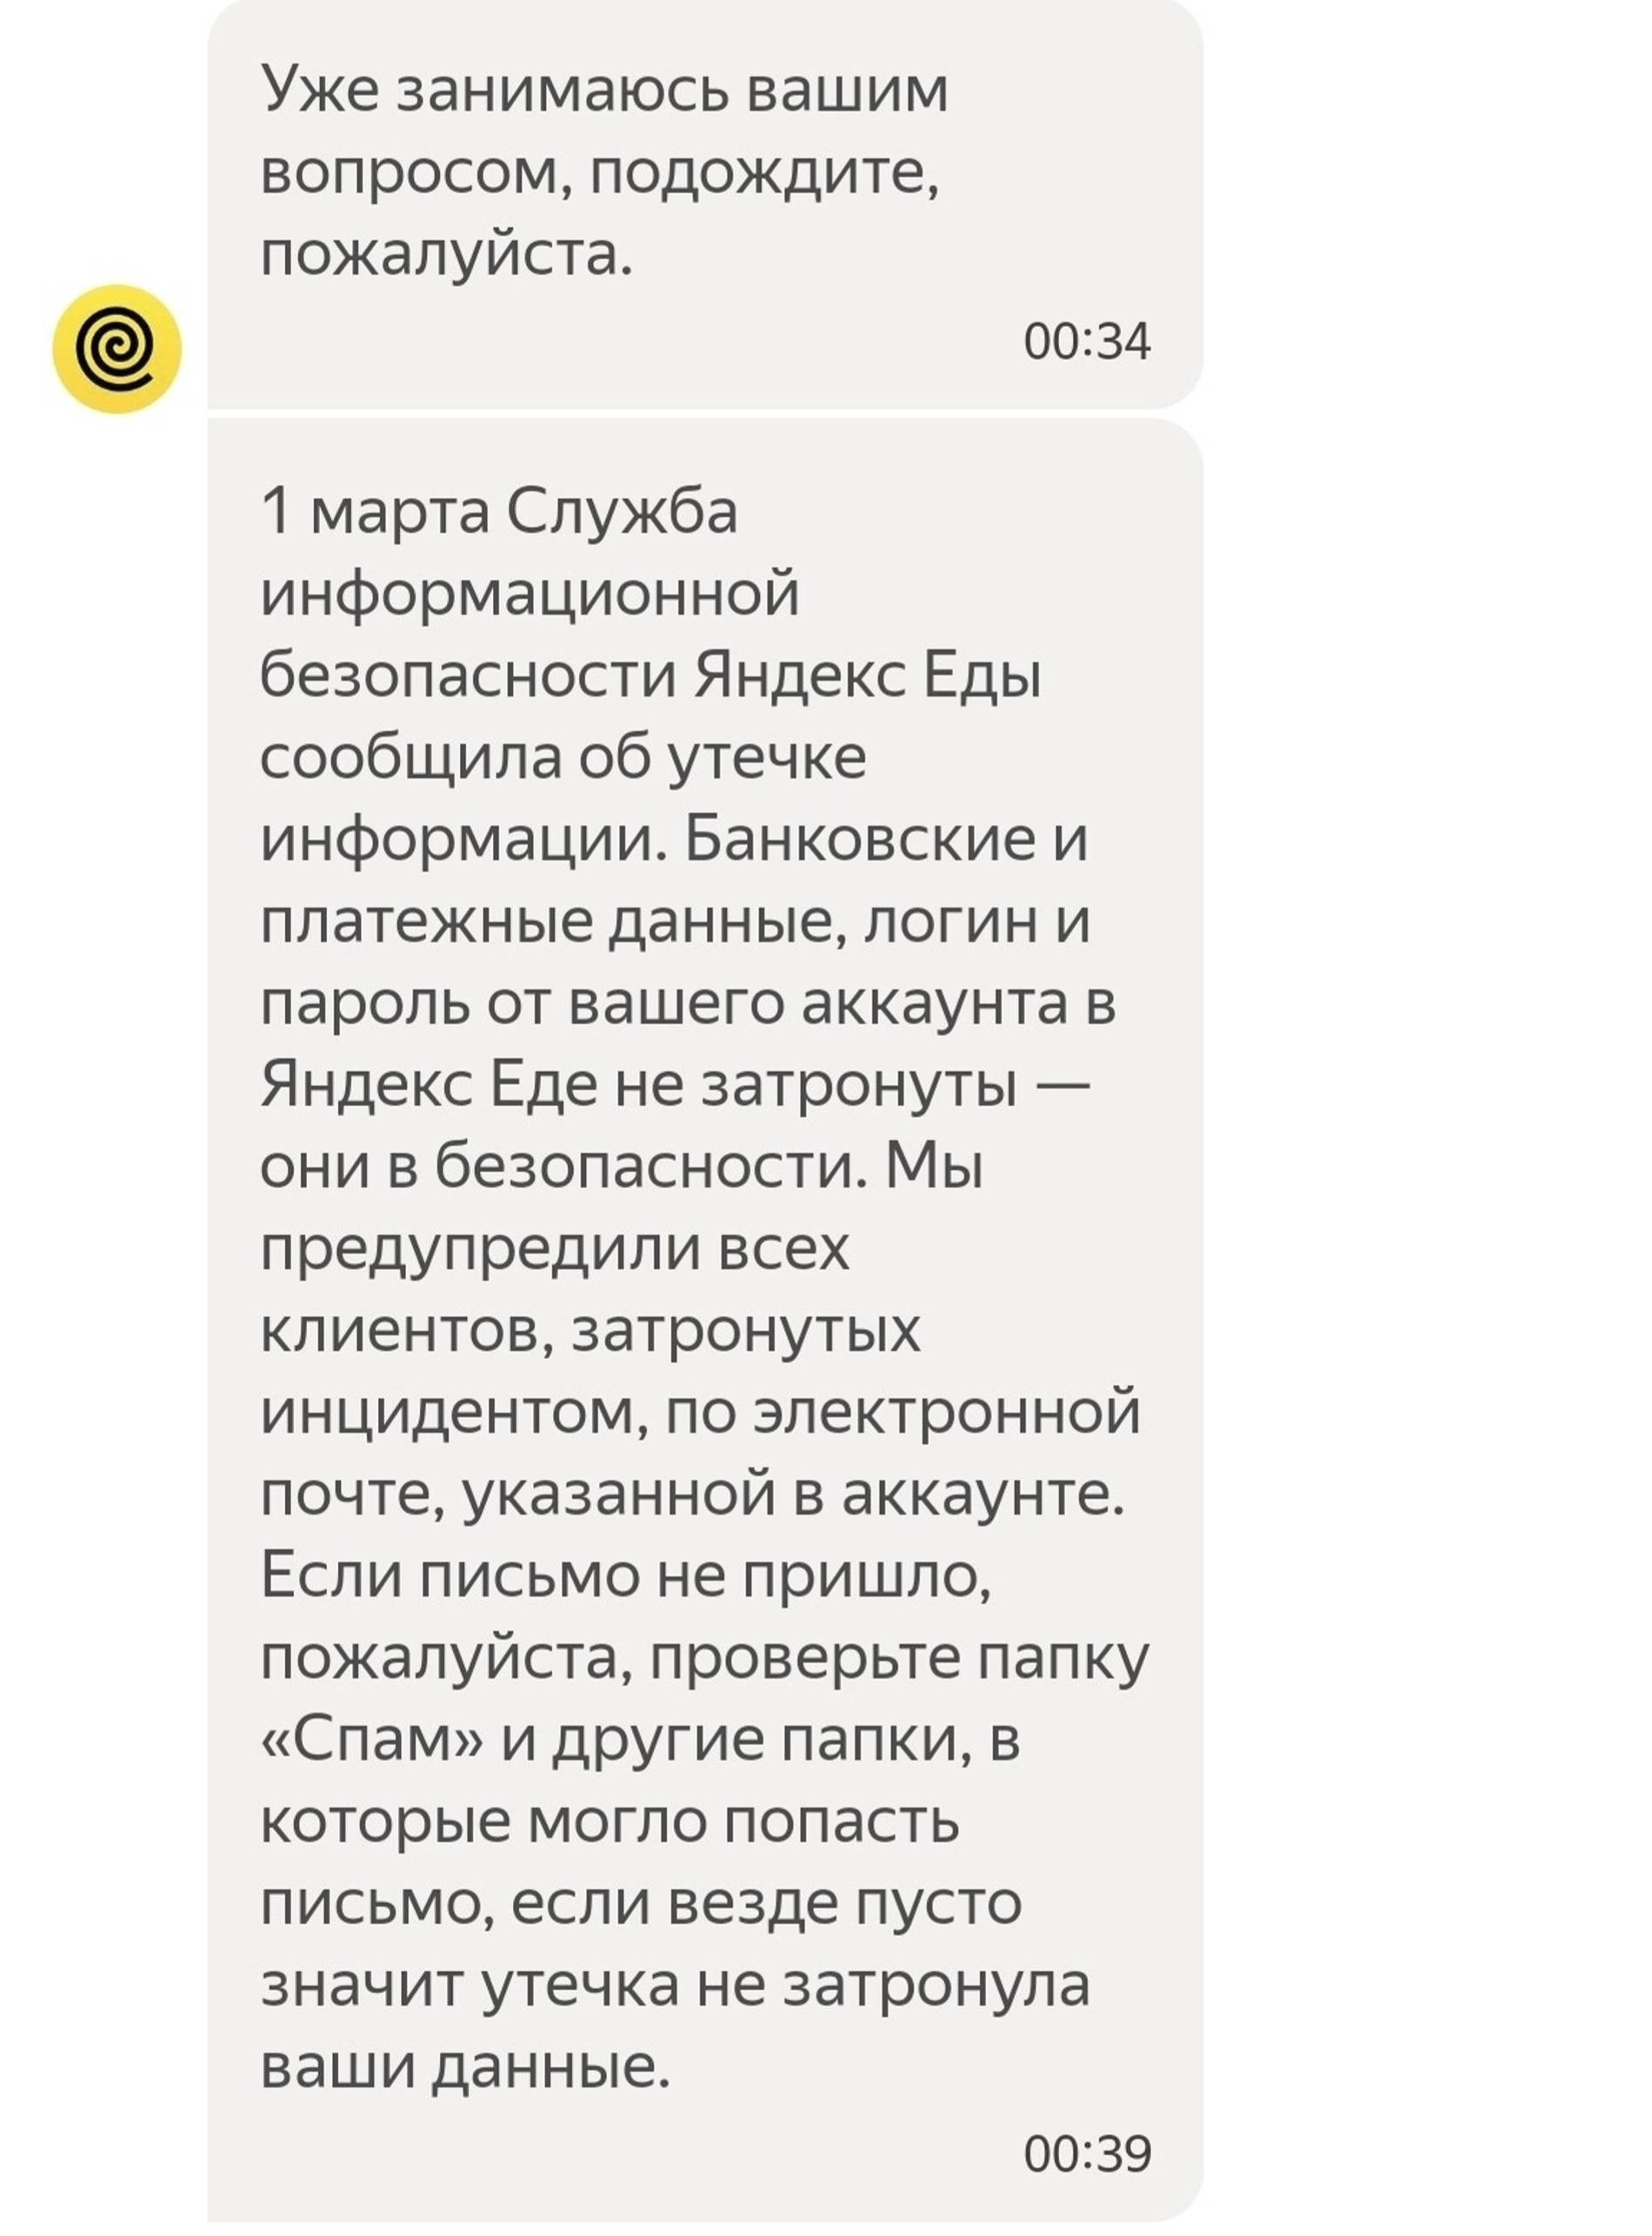 Сообщение о рассылке «Яндекс.Еды» после утечки персональных данных пользователей. Источник: соцсети